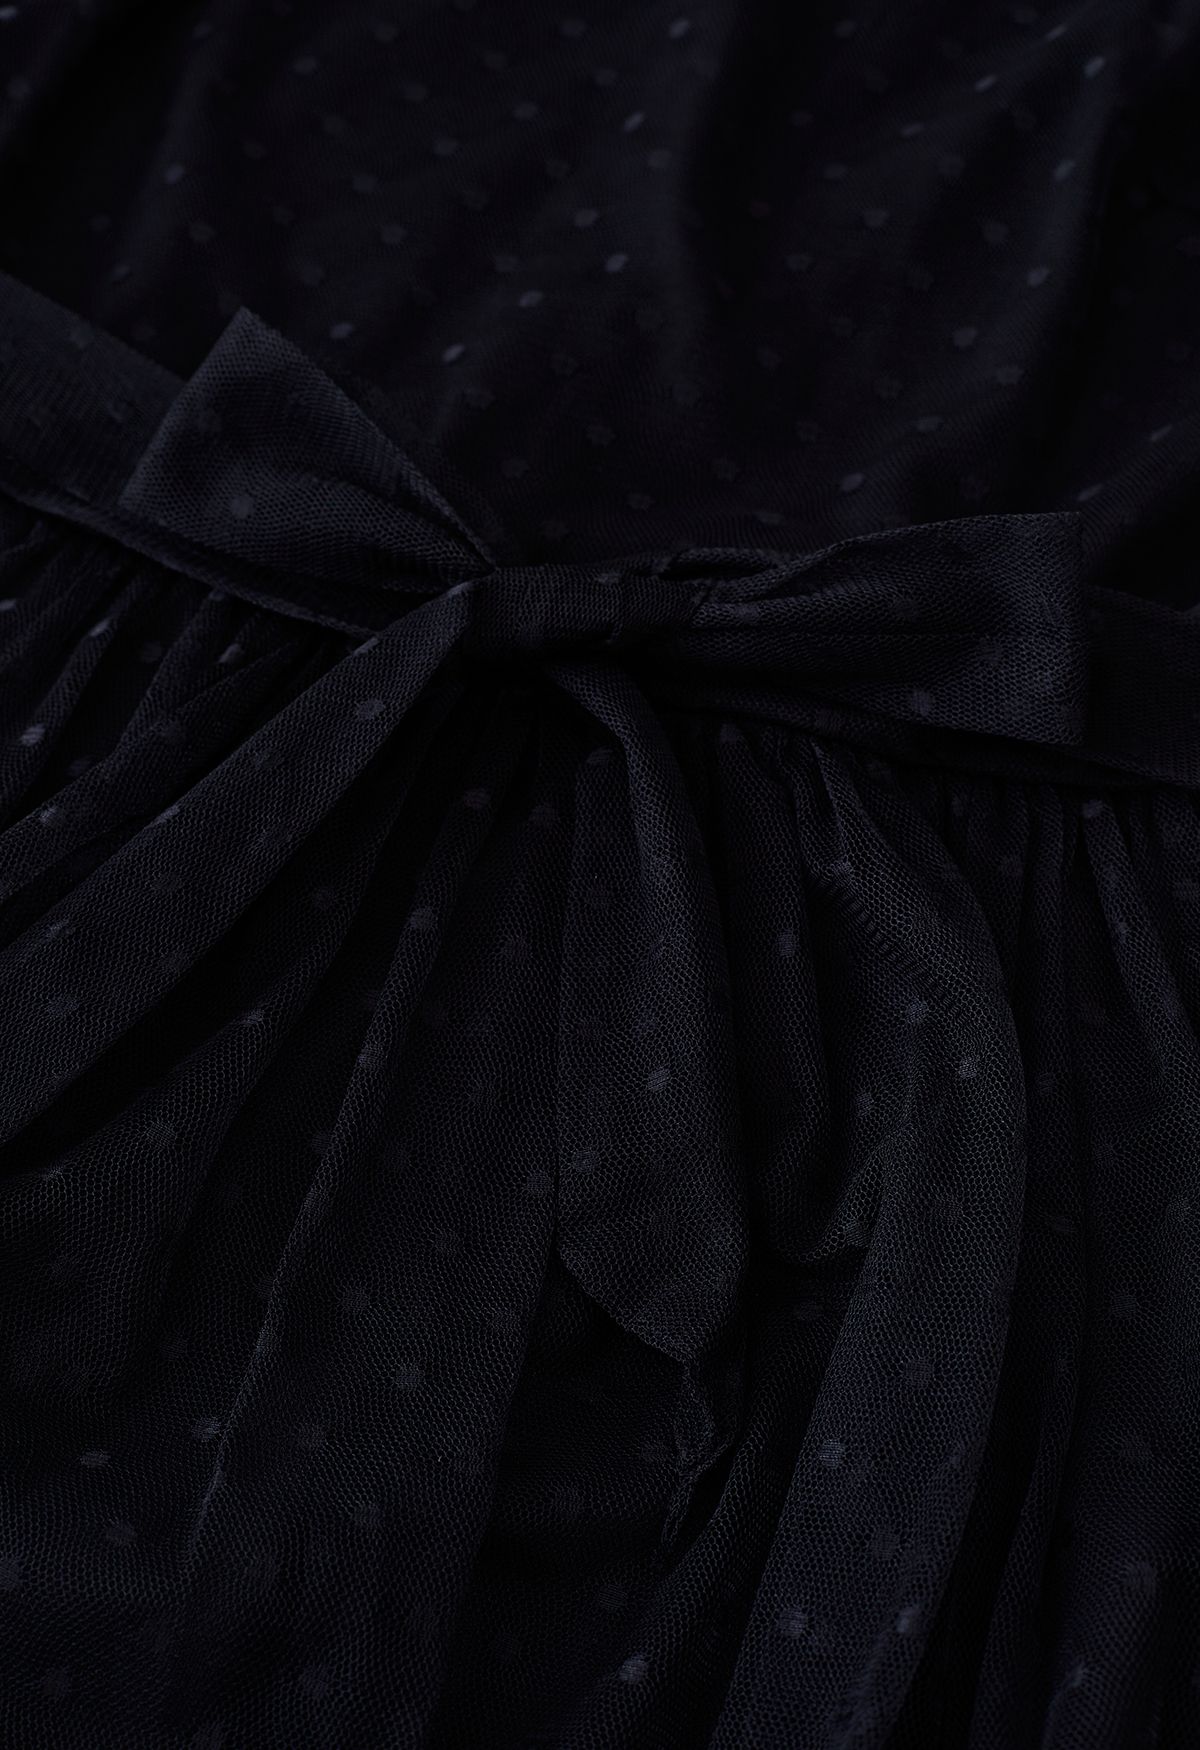 فستان ماكسي شبكي منقط جميل باللون الأسود